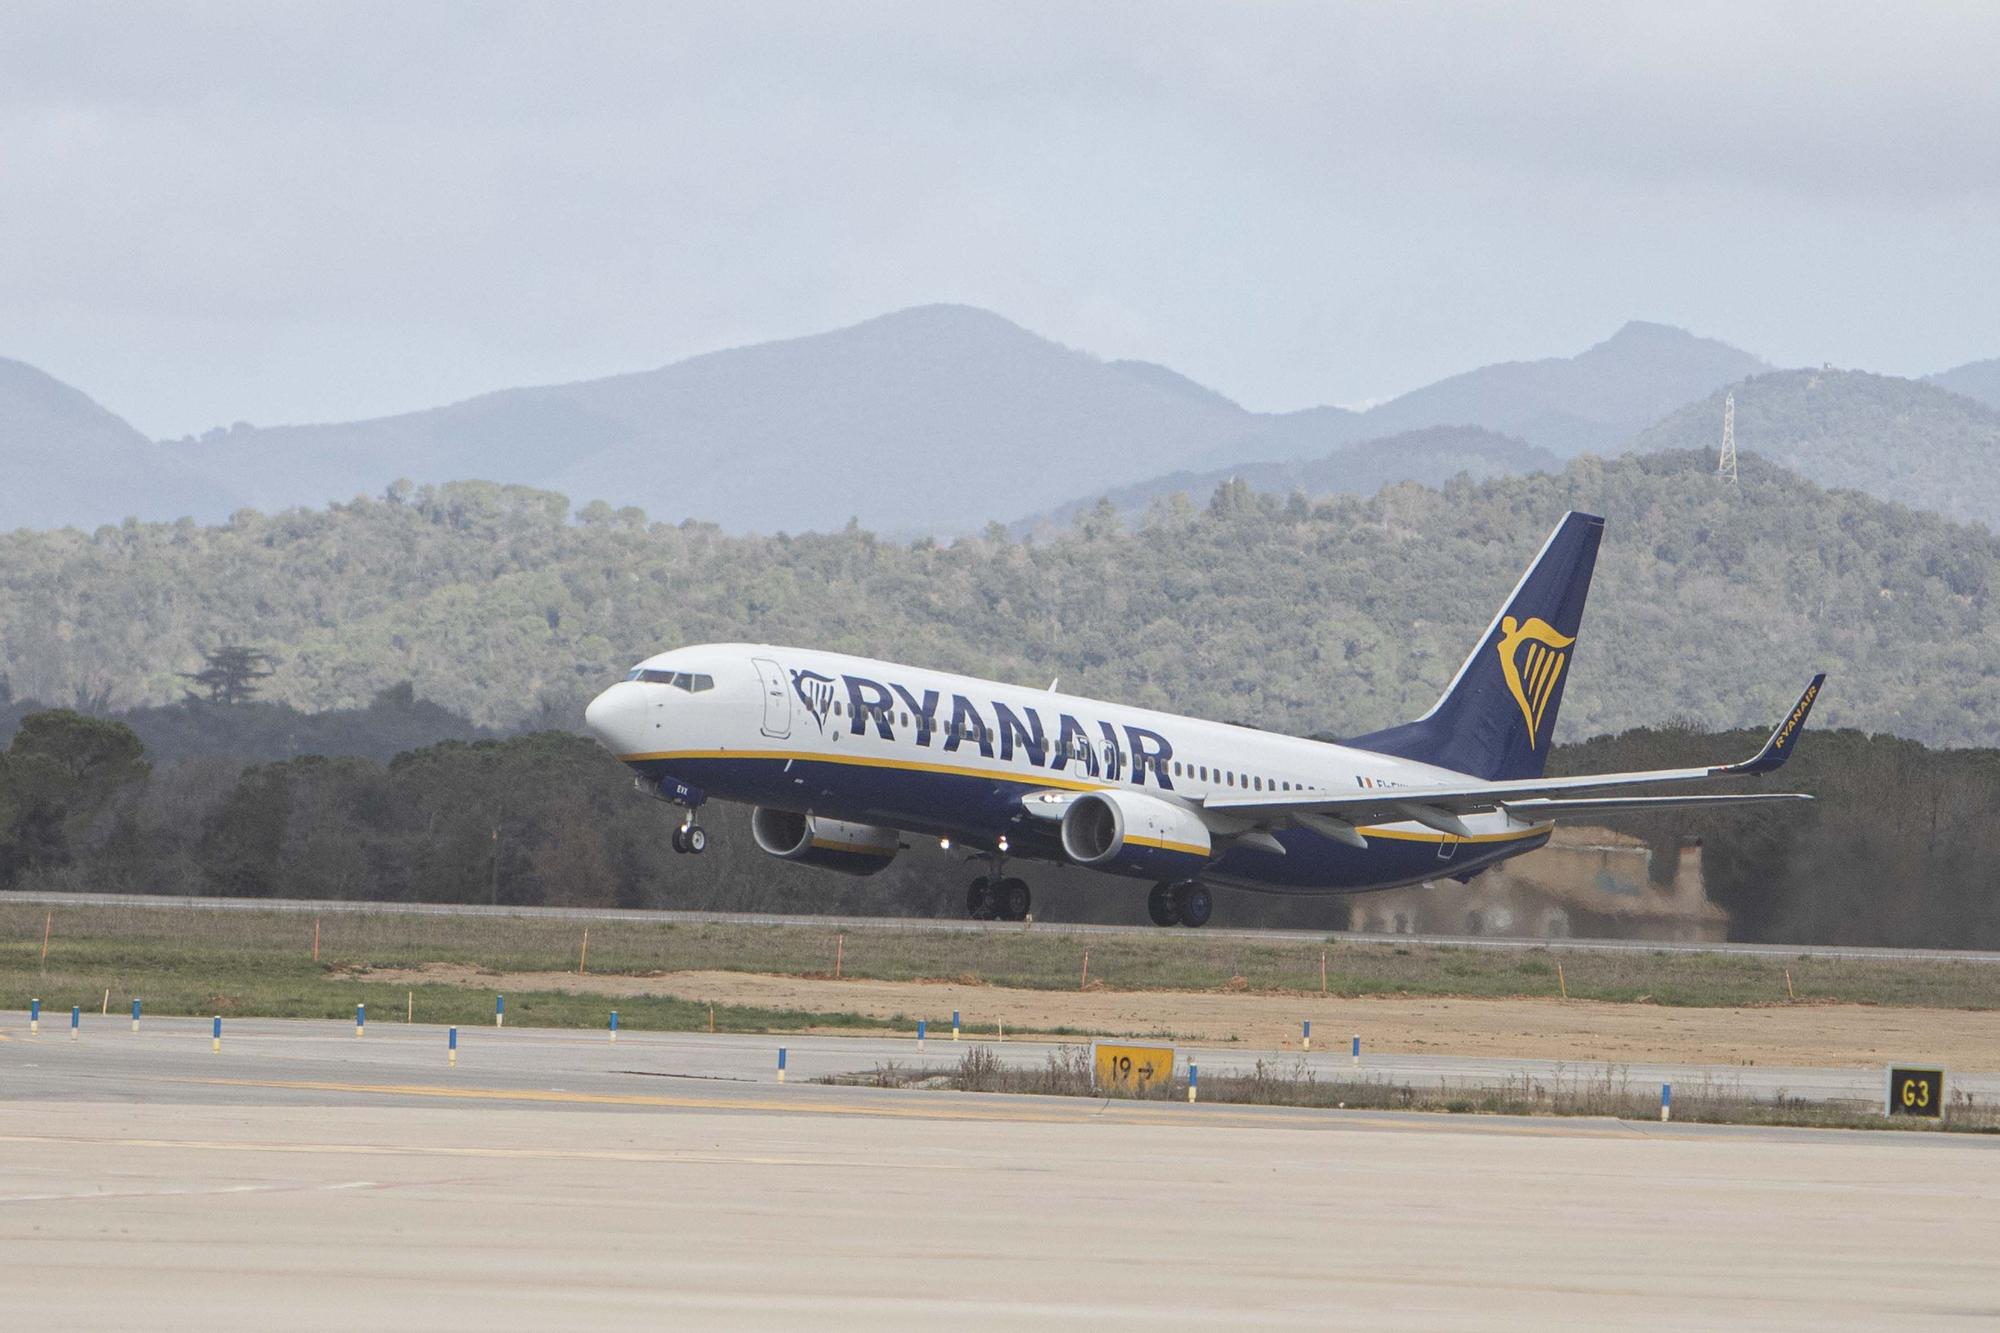 El director de l'aeroport de Girona aposta per obrir-se a noves destinacions a Espanya